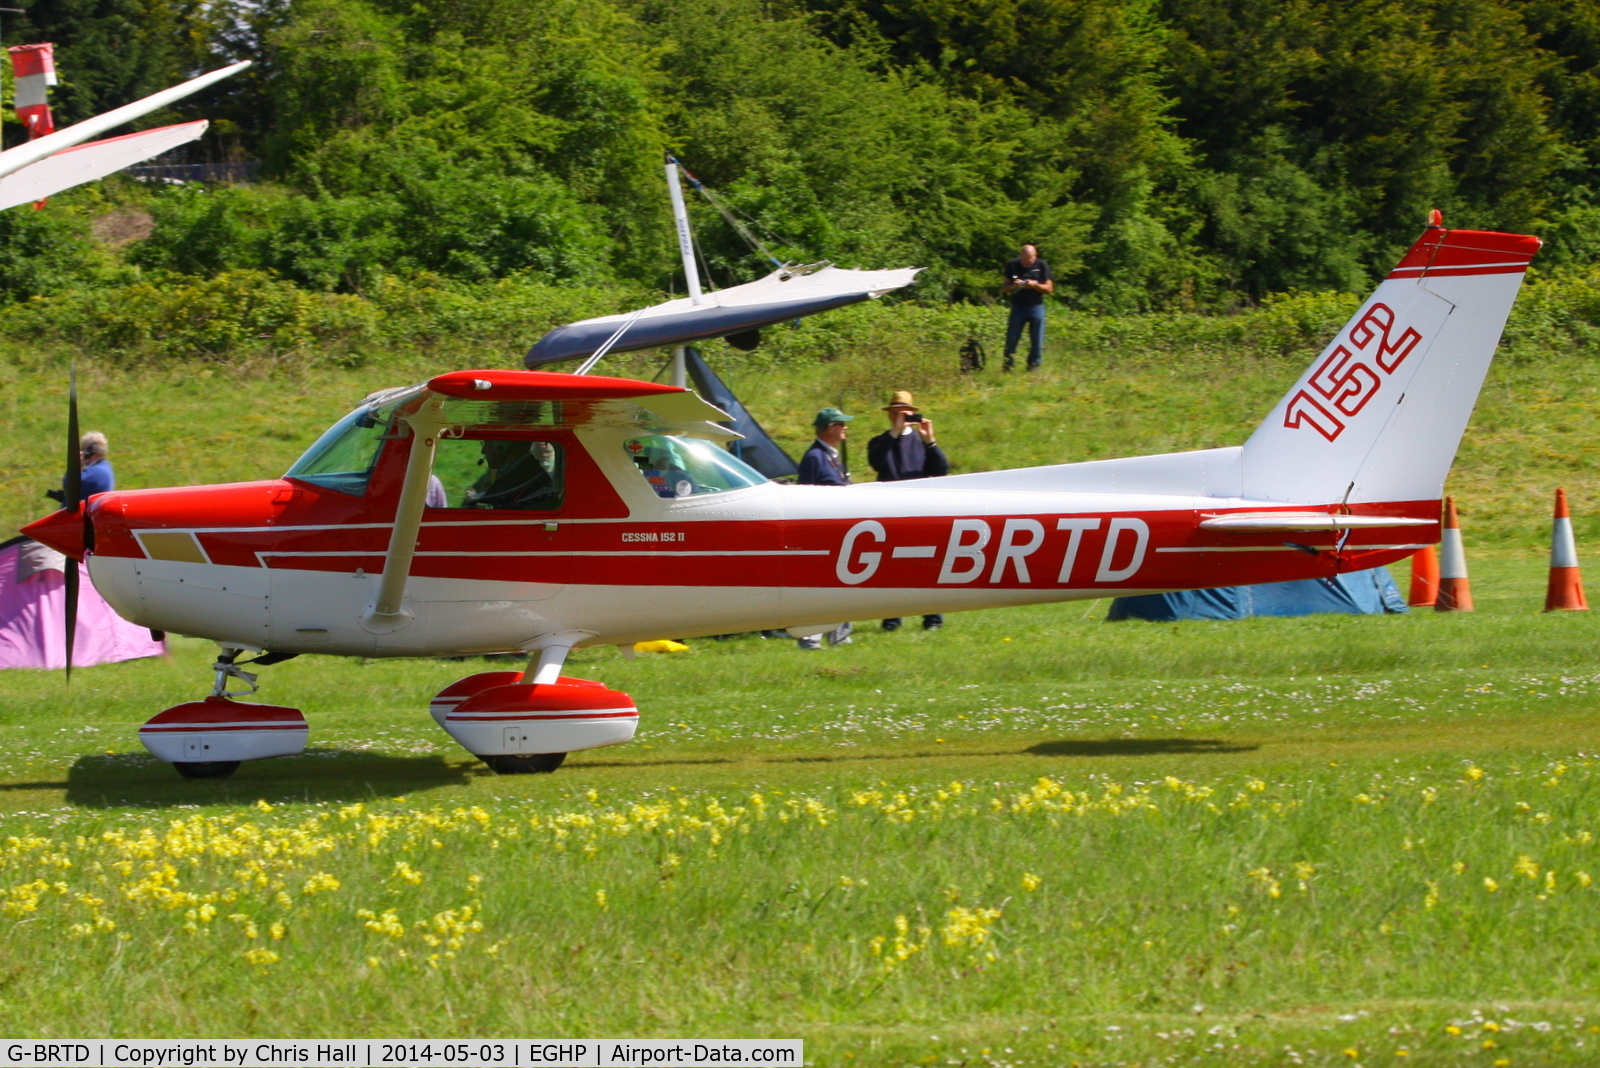 G-BRTD, 1977 Cessna 152 C/N 152-80023, at the 2014 Microlight Trade Fair, Popham